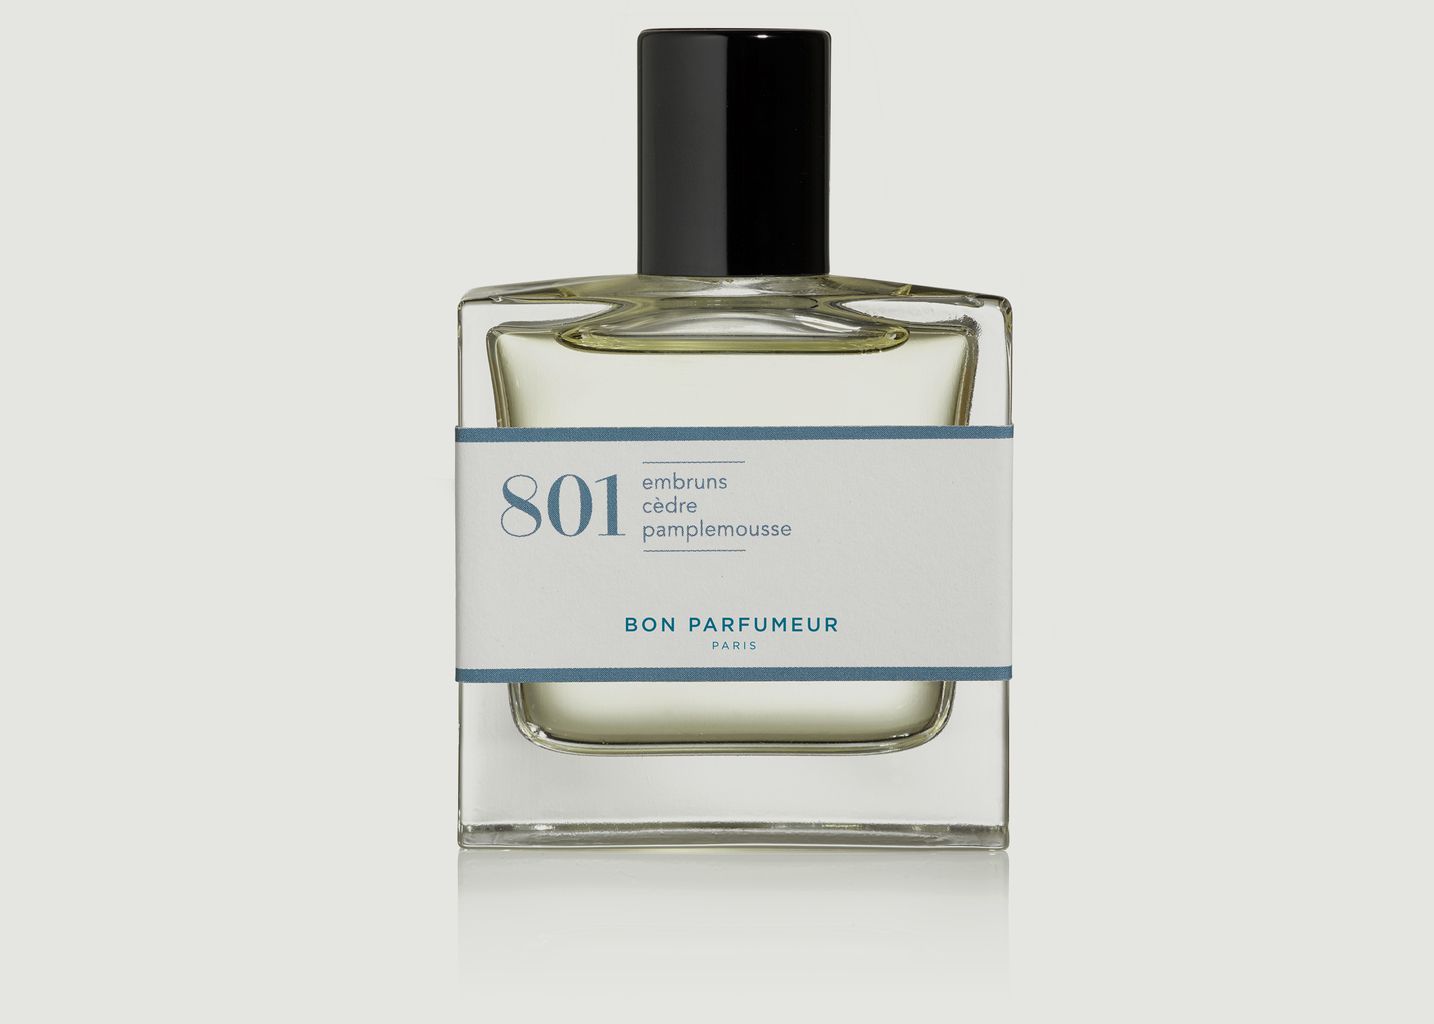 Eau de Parfum 801 - Bon Parfumeur